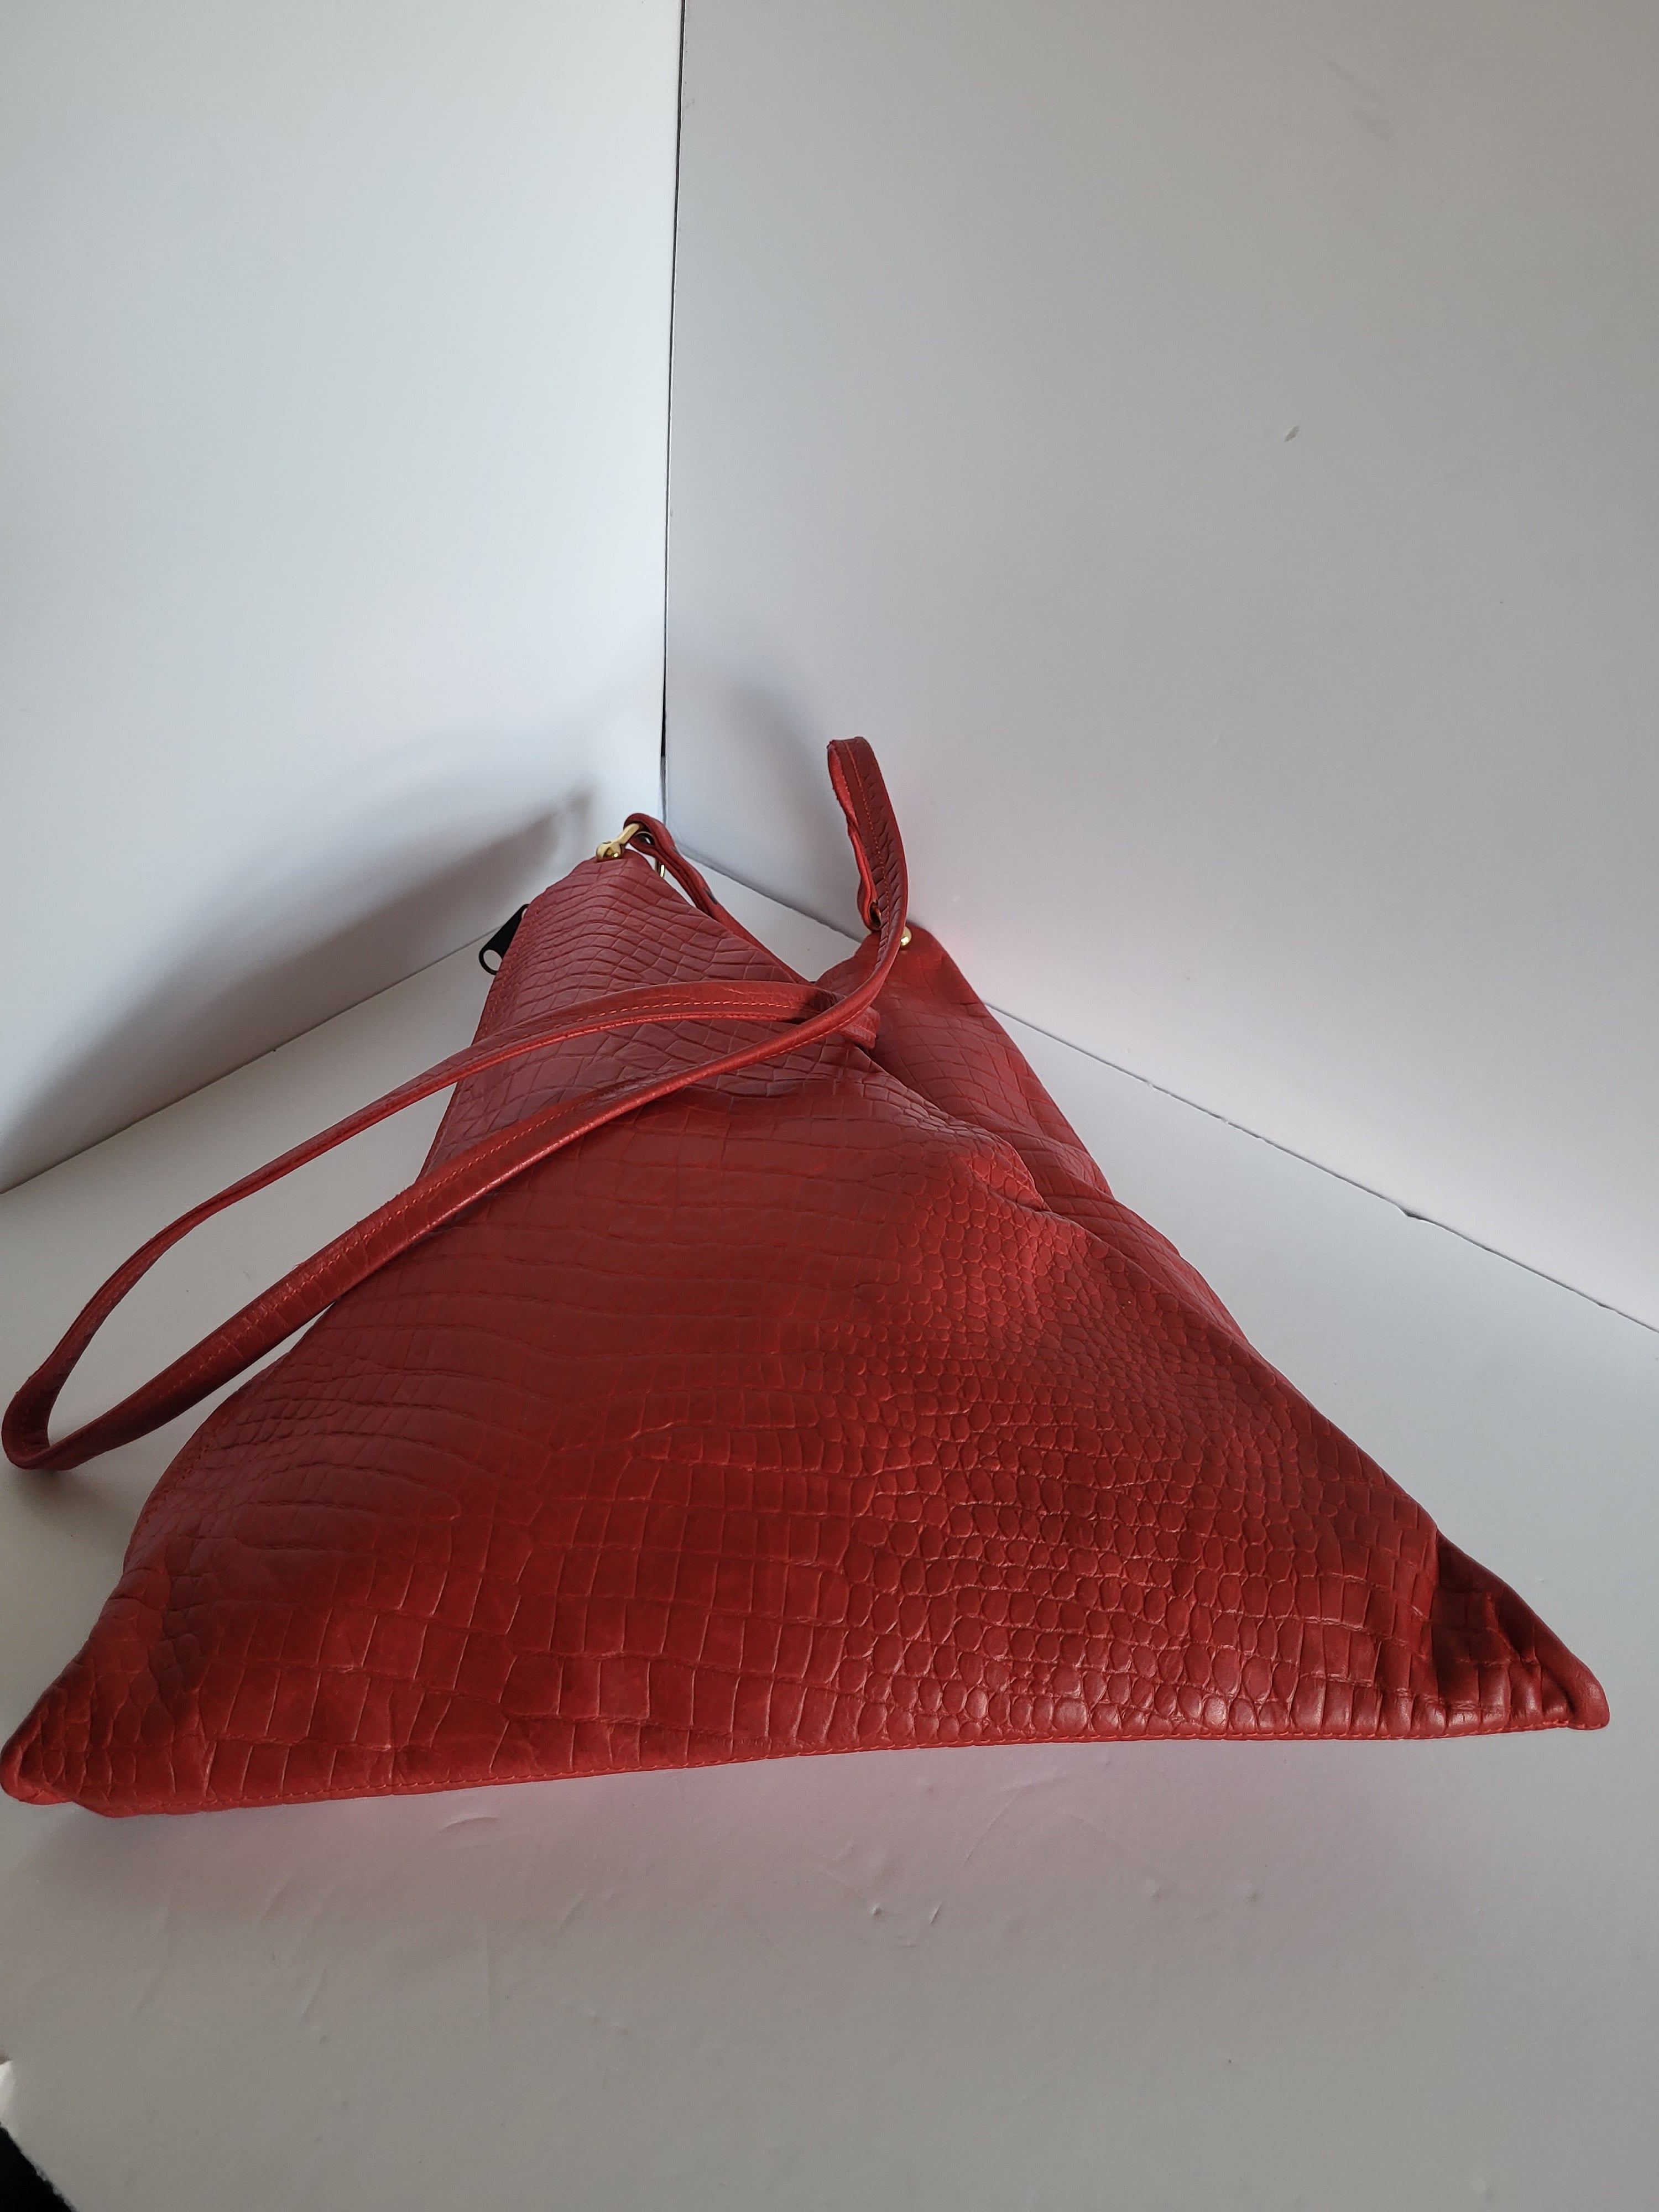 Red Textured Leather Shoulder Bag